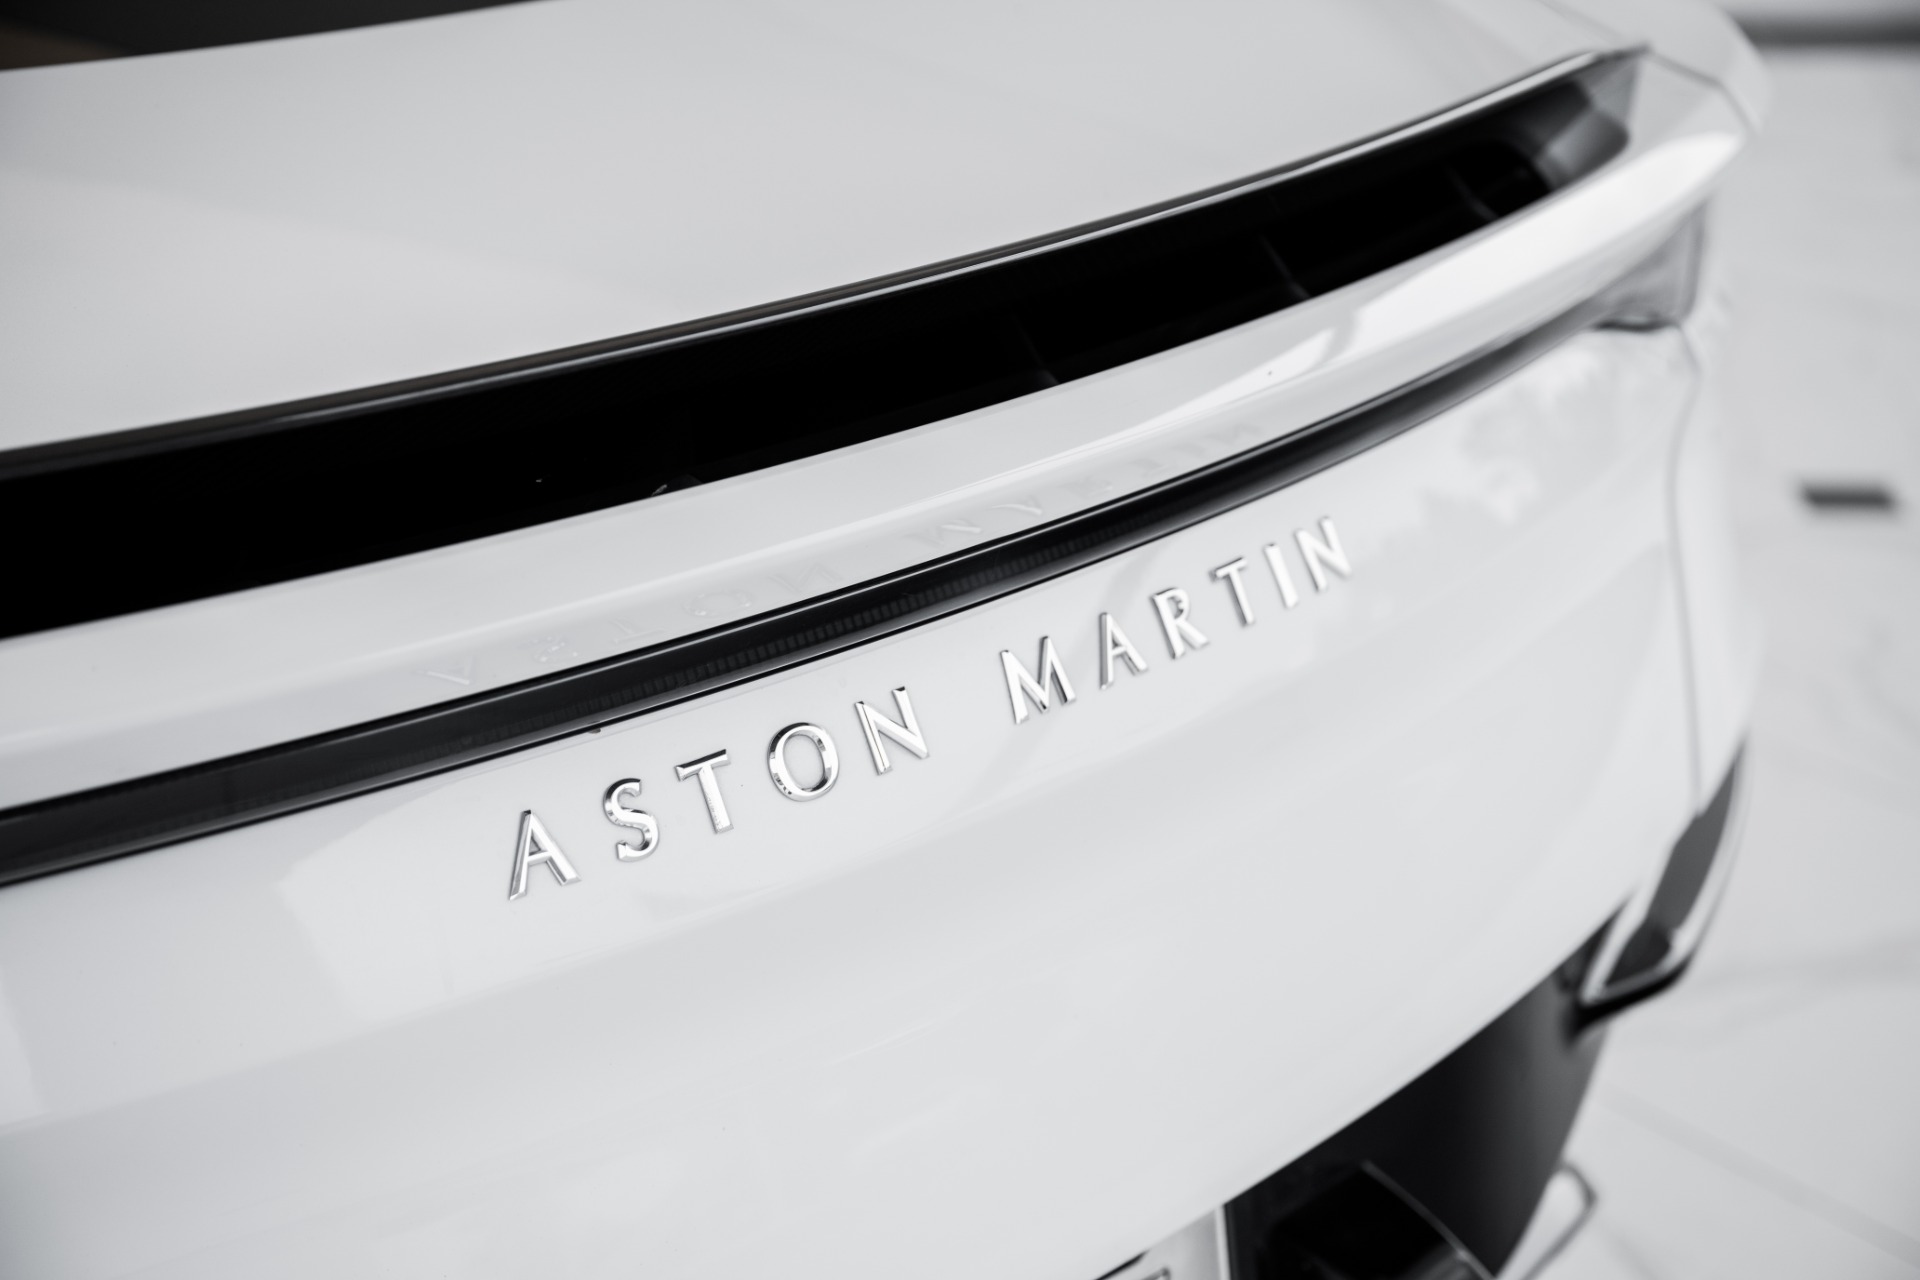 Used-2019-Aston-Martin-DBS-Superleggera